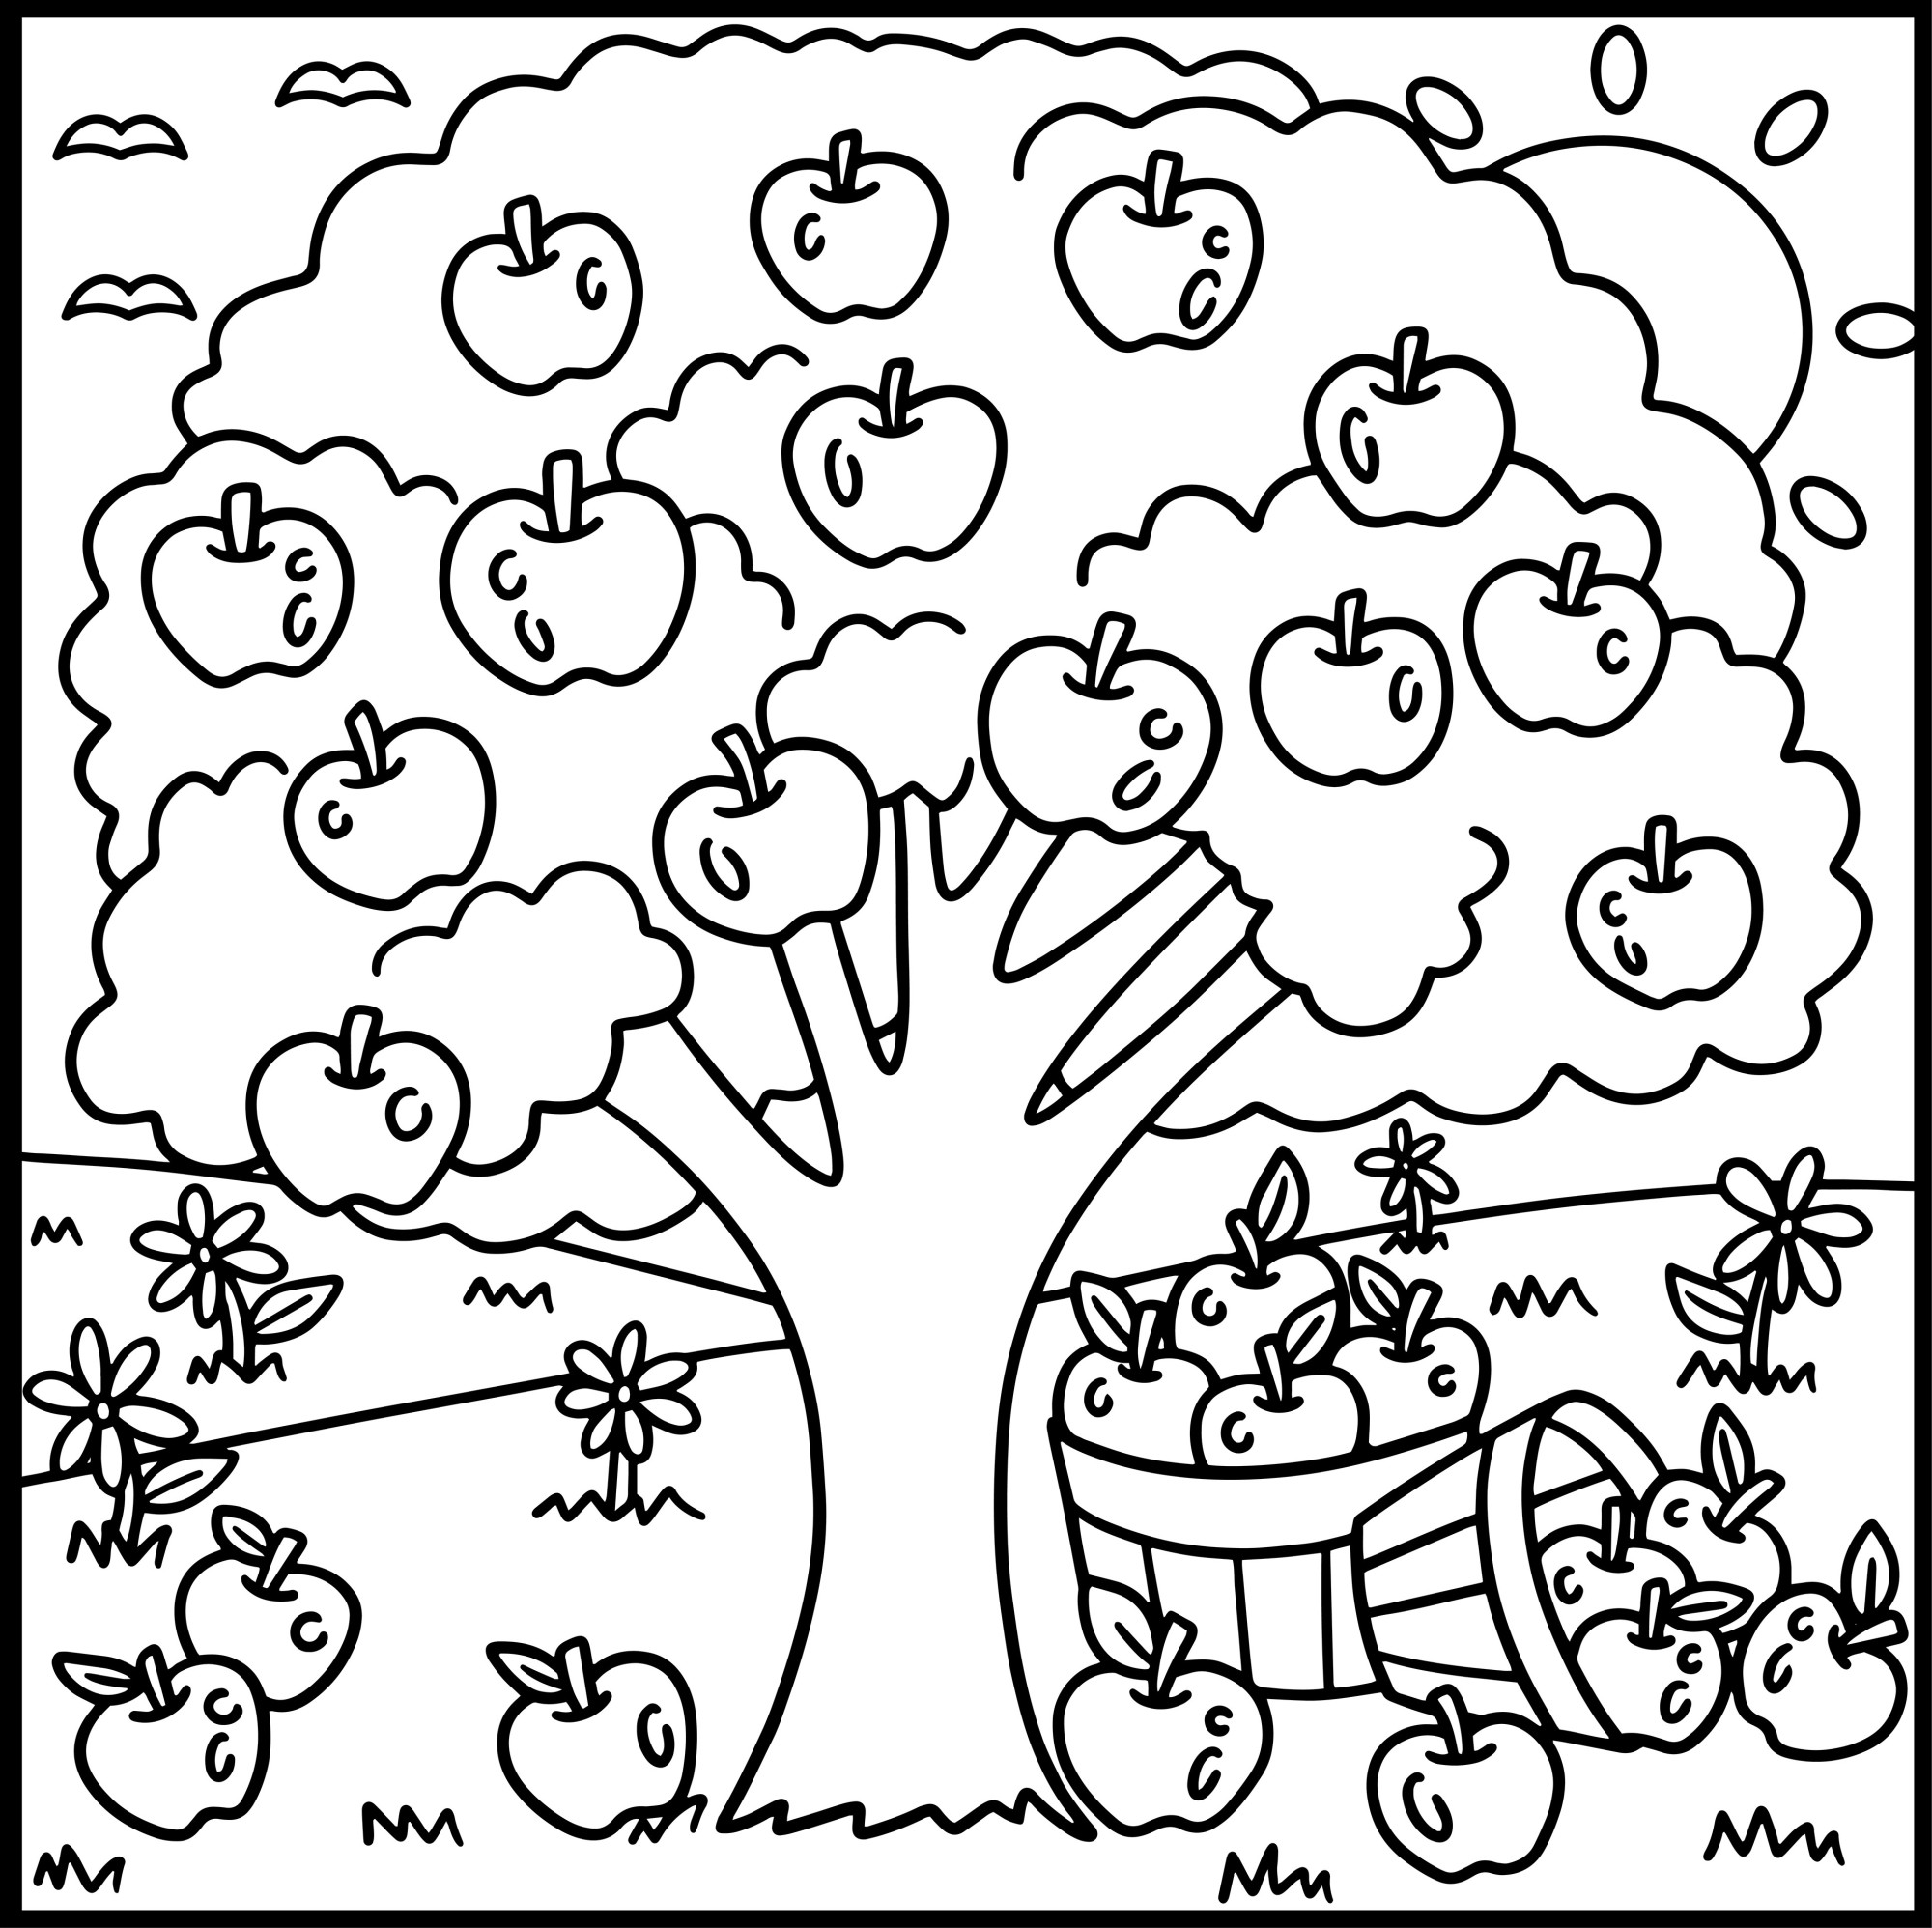 Раскраска для детей: яблоня на поляне с корзинками фруктов под деревом